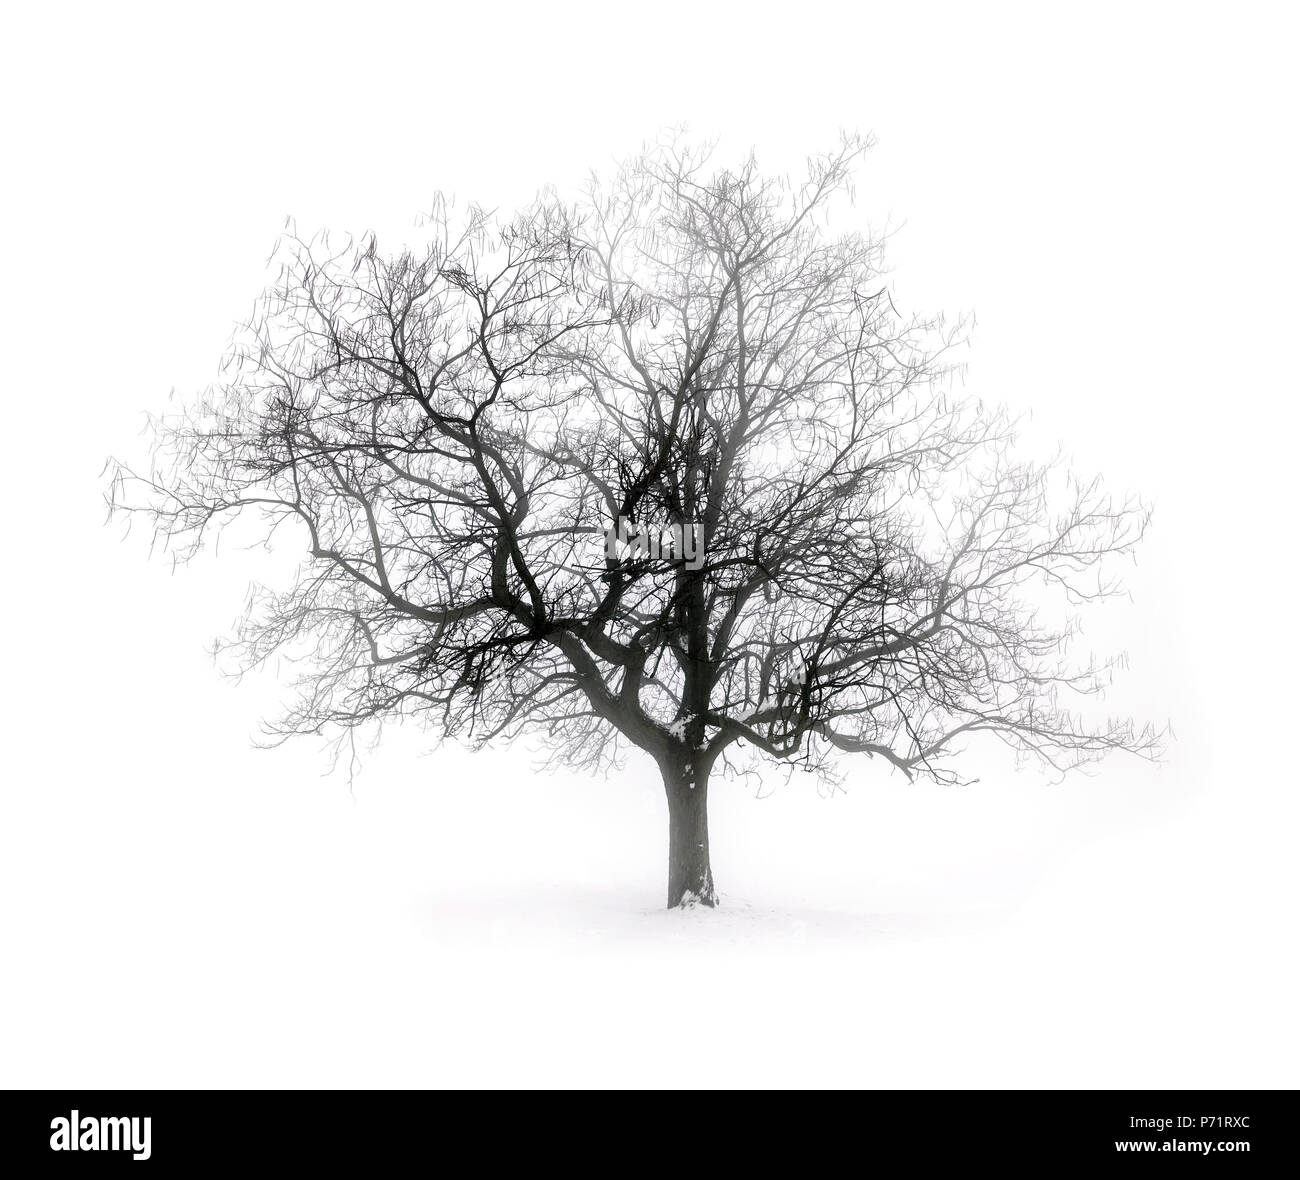 Único árbol deshojado en niebla invernal sobre fondo blanco de nieve Foto de stock